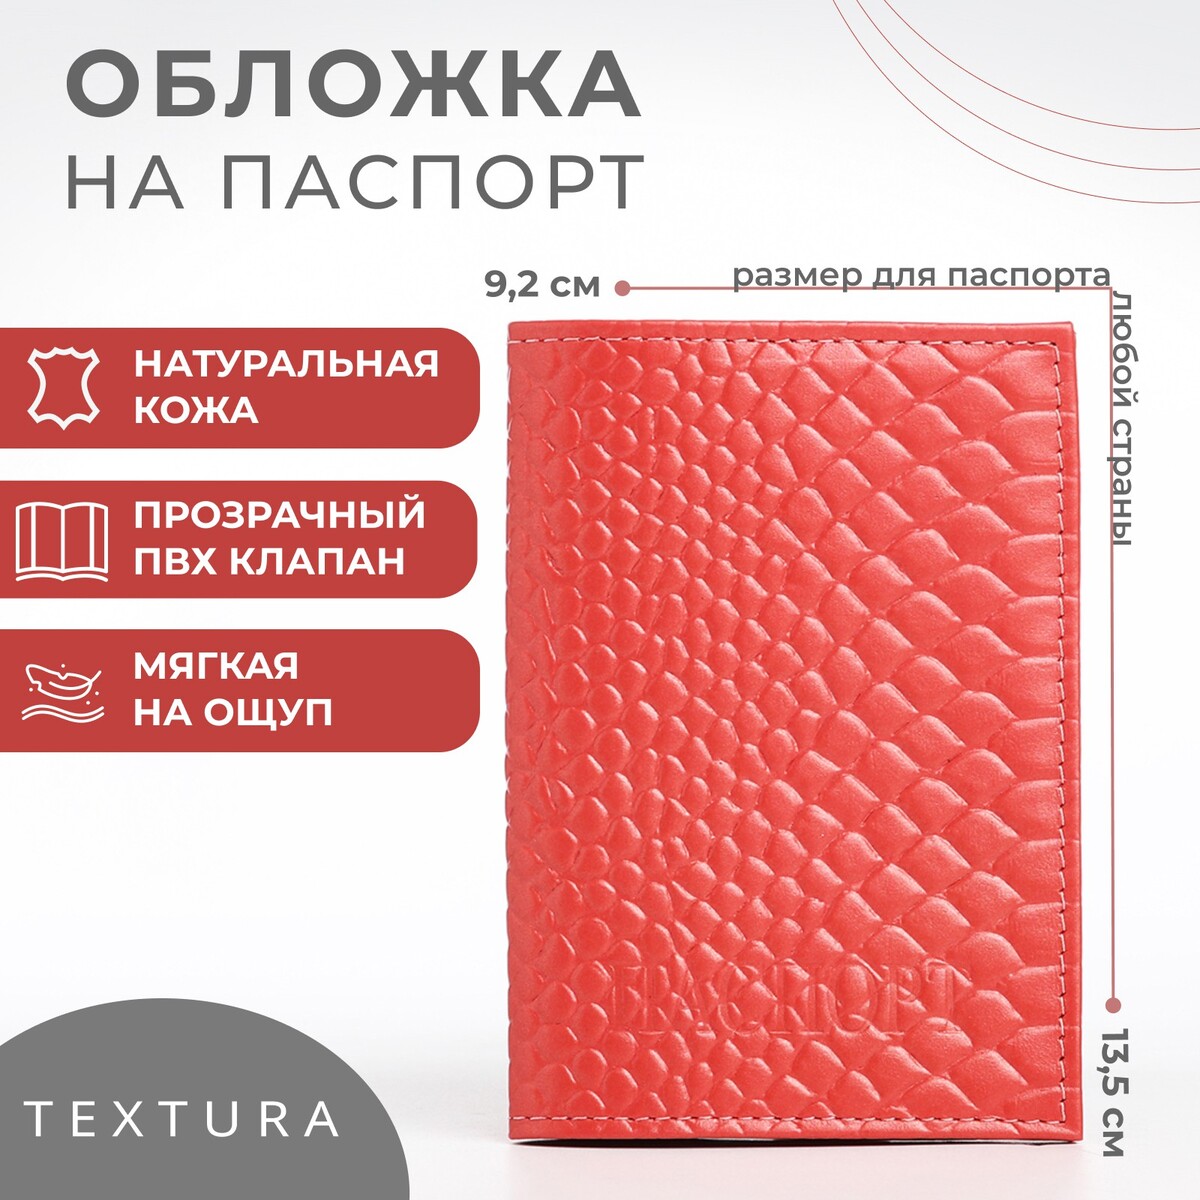 Обложка для паспорта textura, цвет чайной розы обложка для паспорта textura